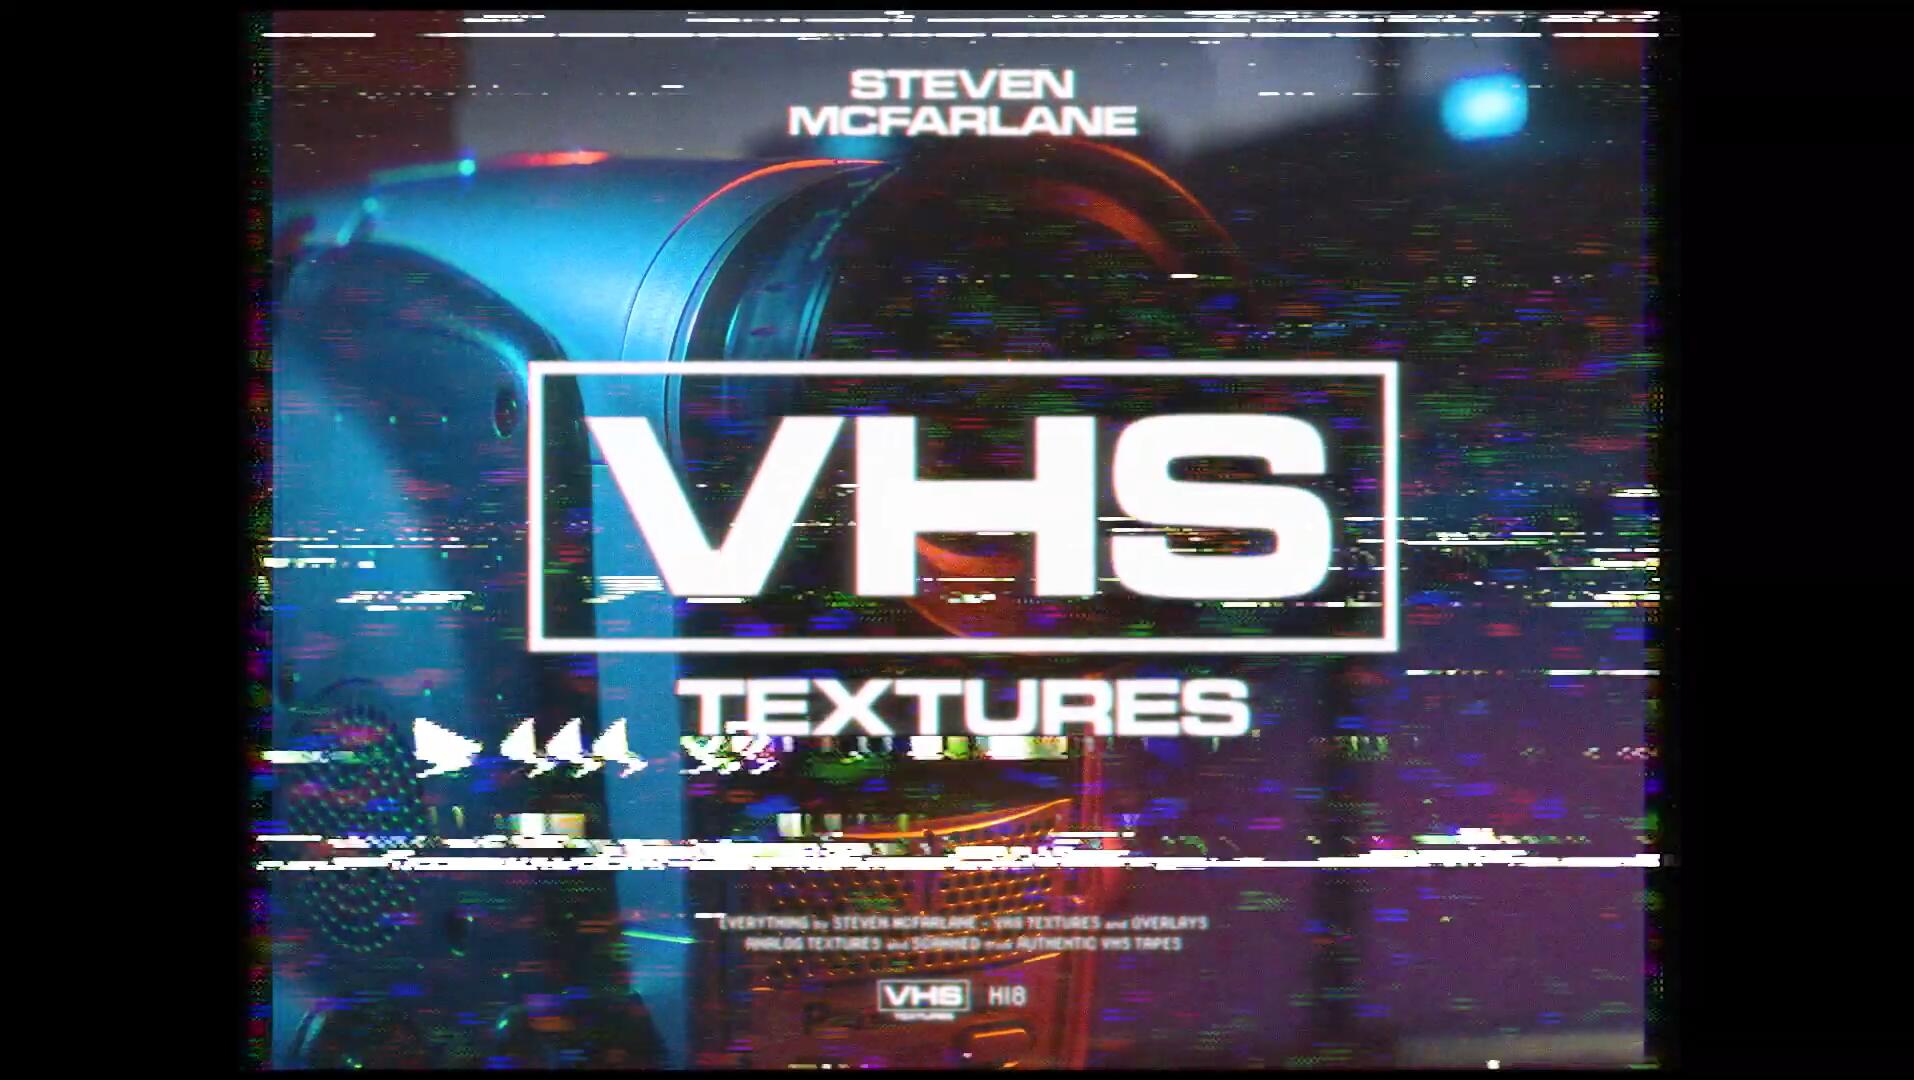 130个真实复古怀旧氛围磁带VHS颗粒纹理视频素材+标题+音效效果包 Steven Mcfarlane - VHS TEXTURE 影视音频 第1张